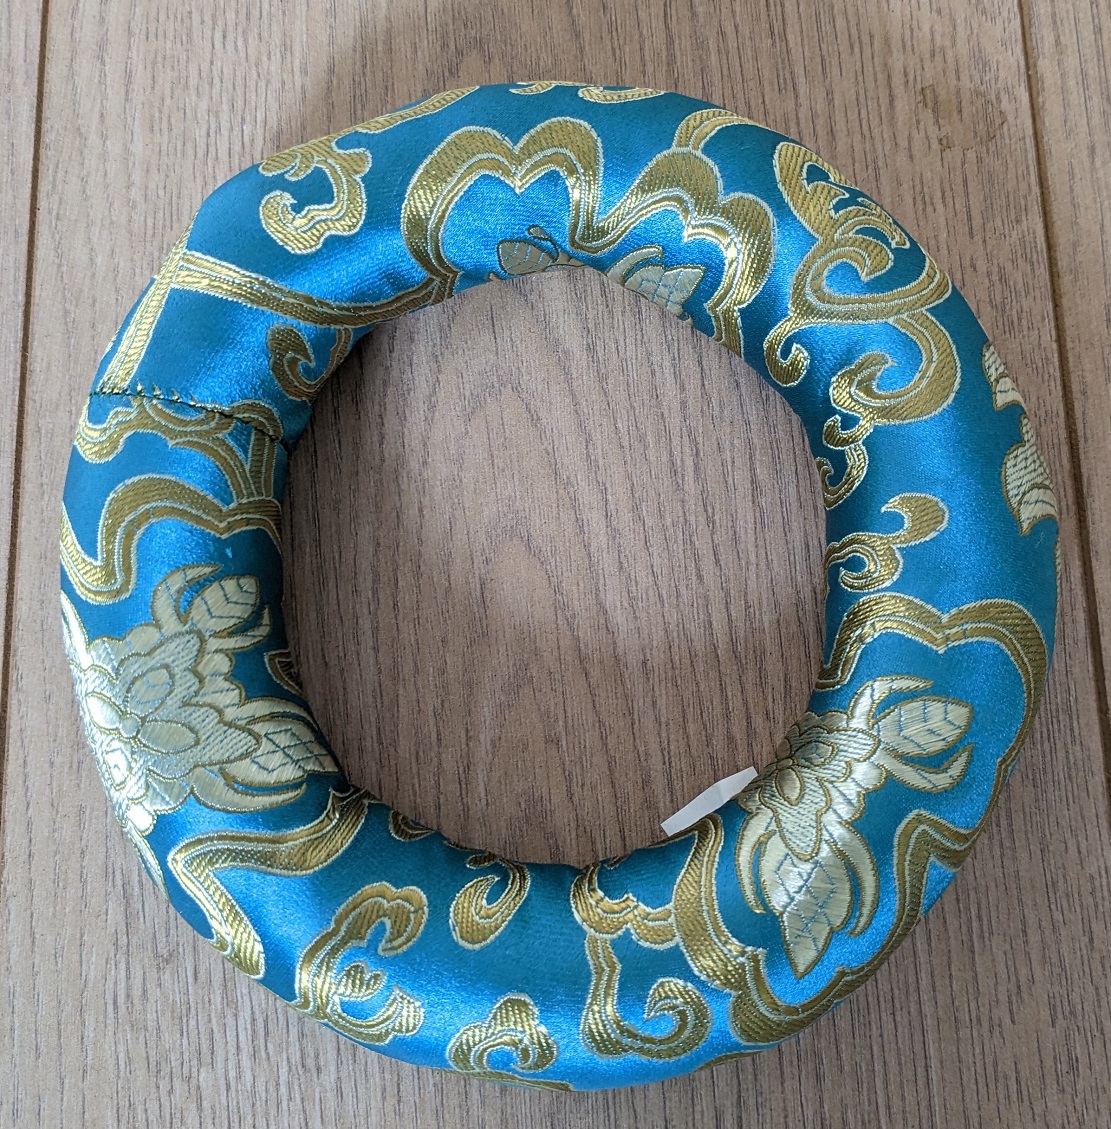 Tibetan Bowl Ring Cushion 18cm Diameter Turquoise